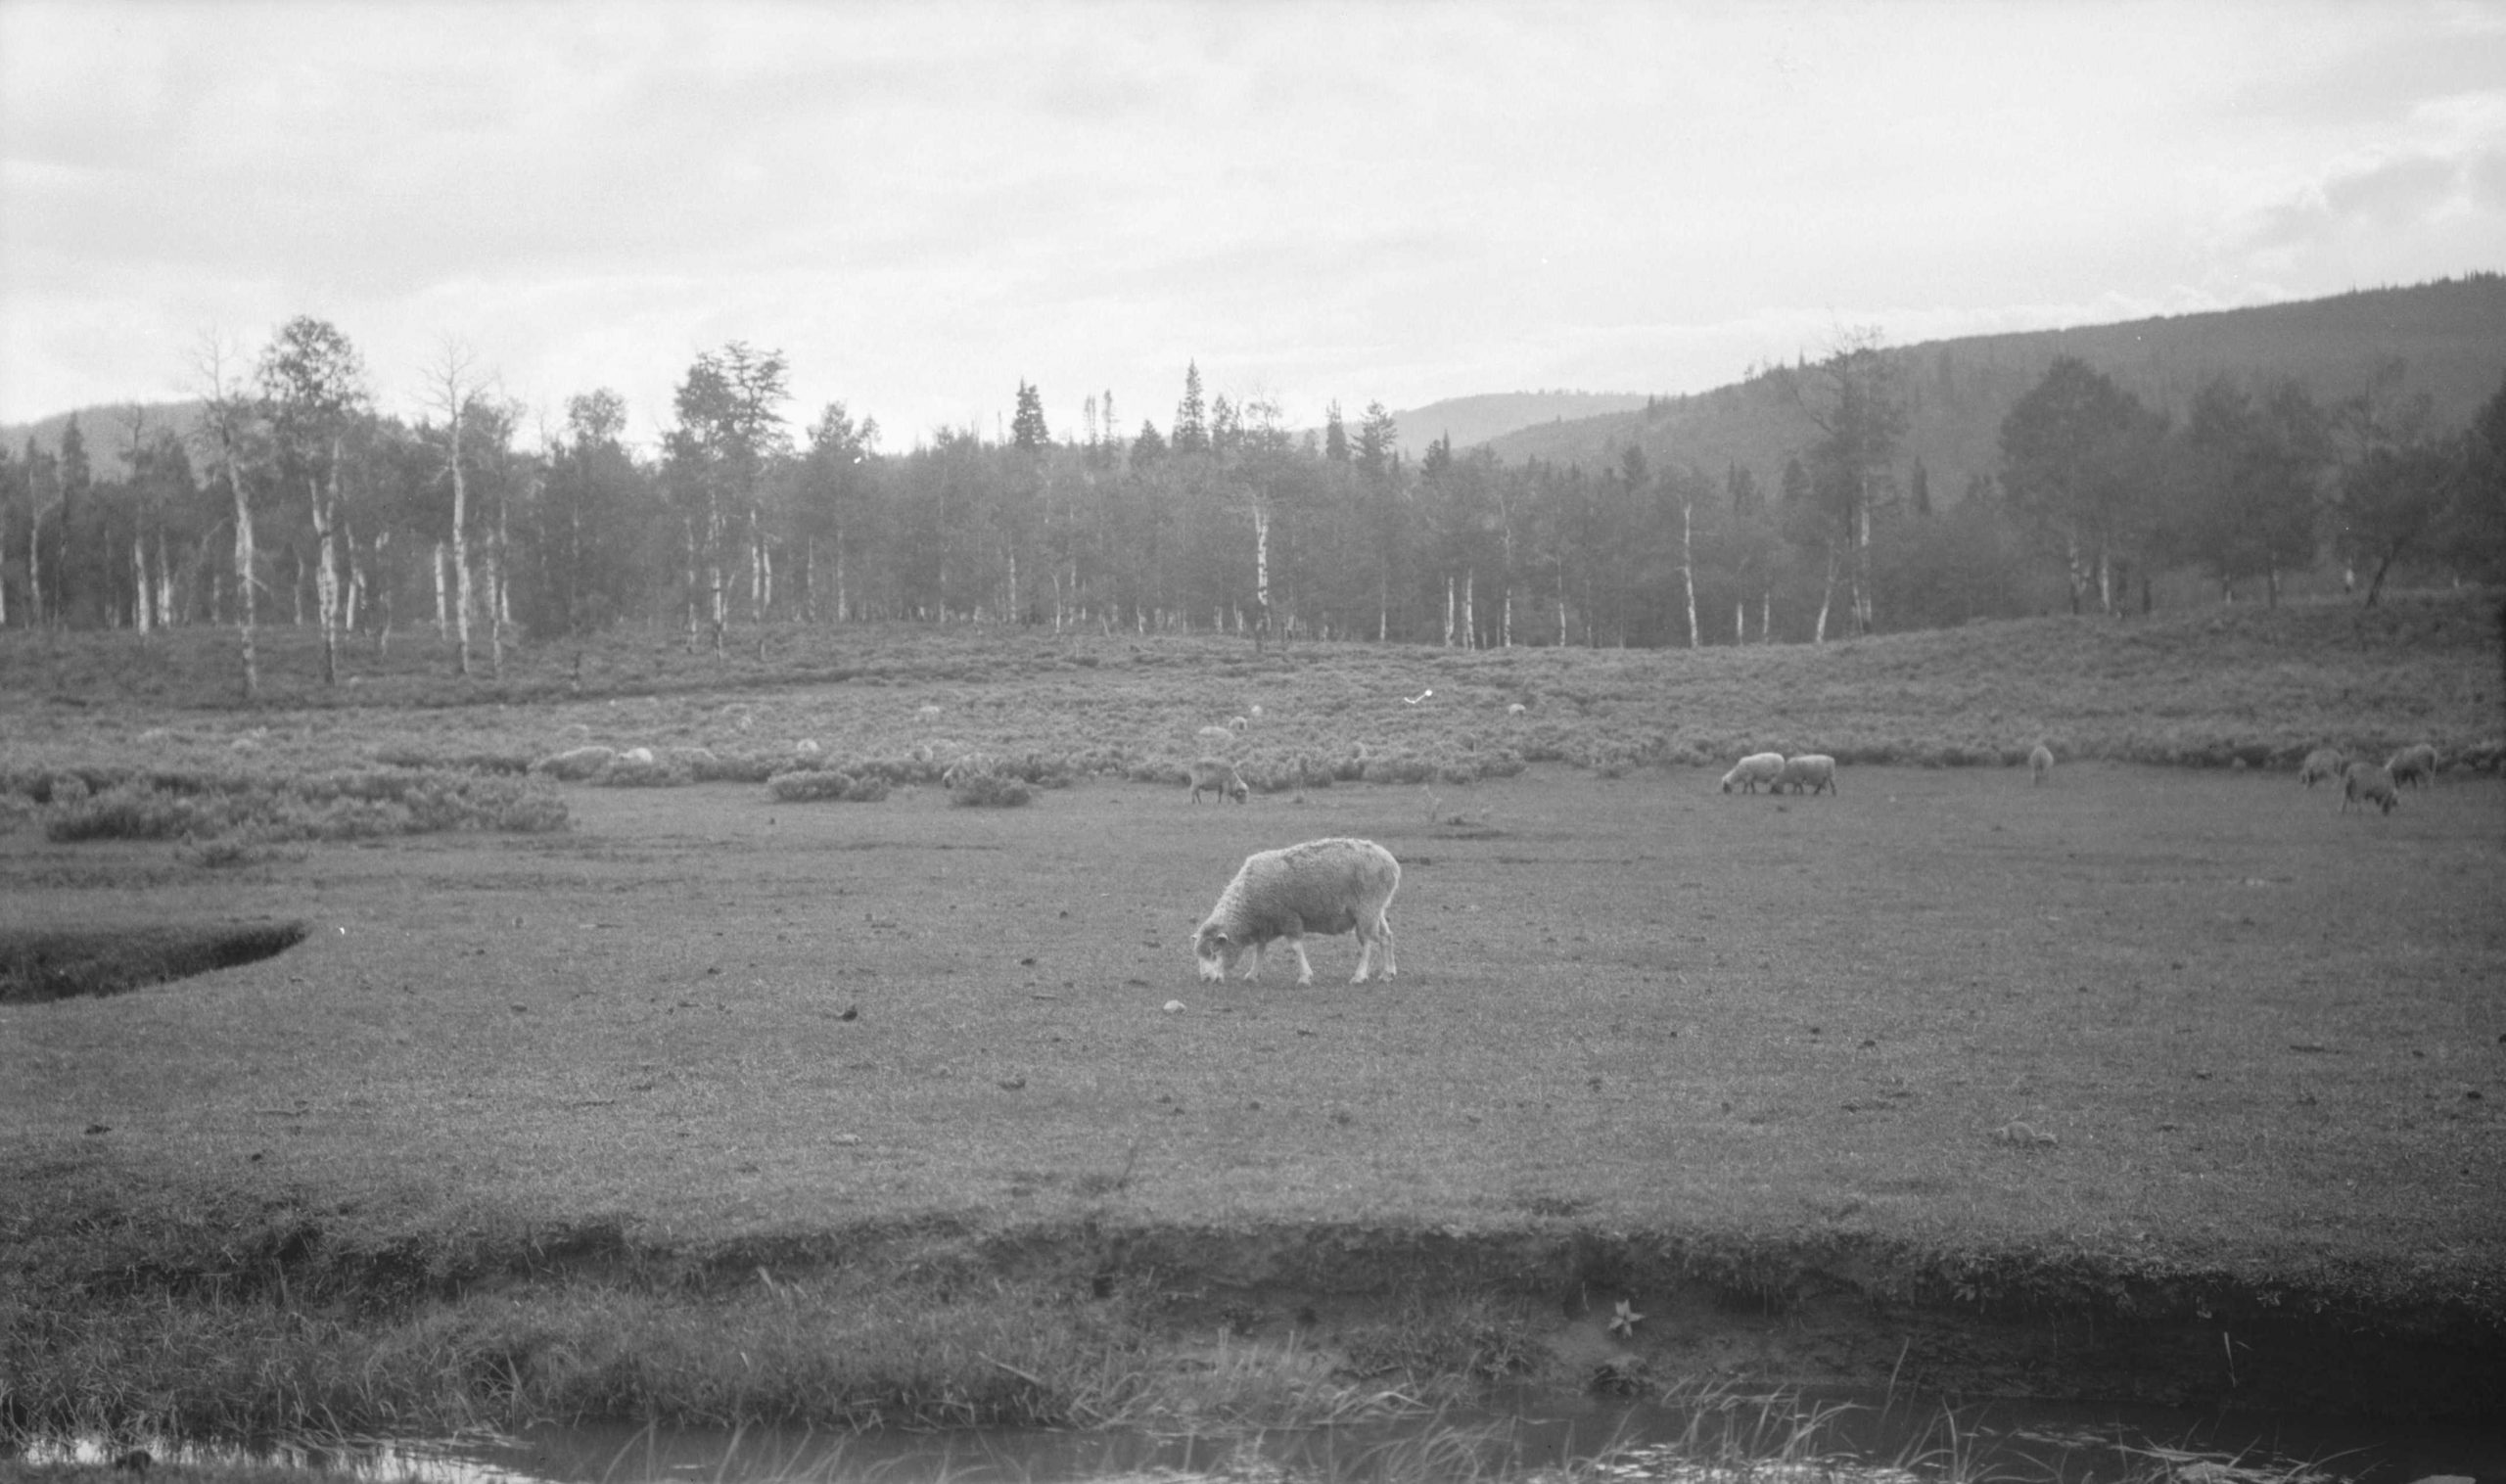 Sheep grazing in a Utah pasture.